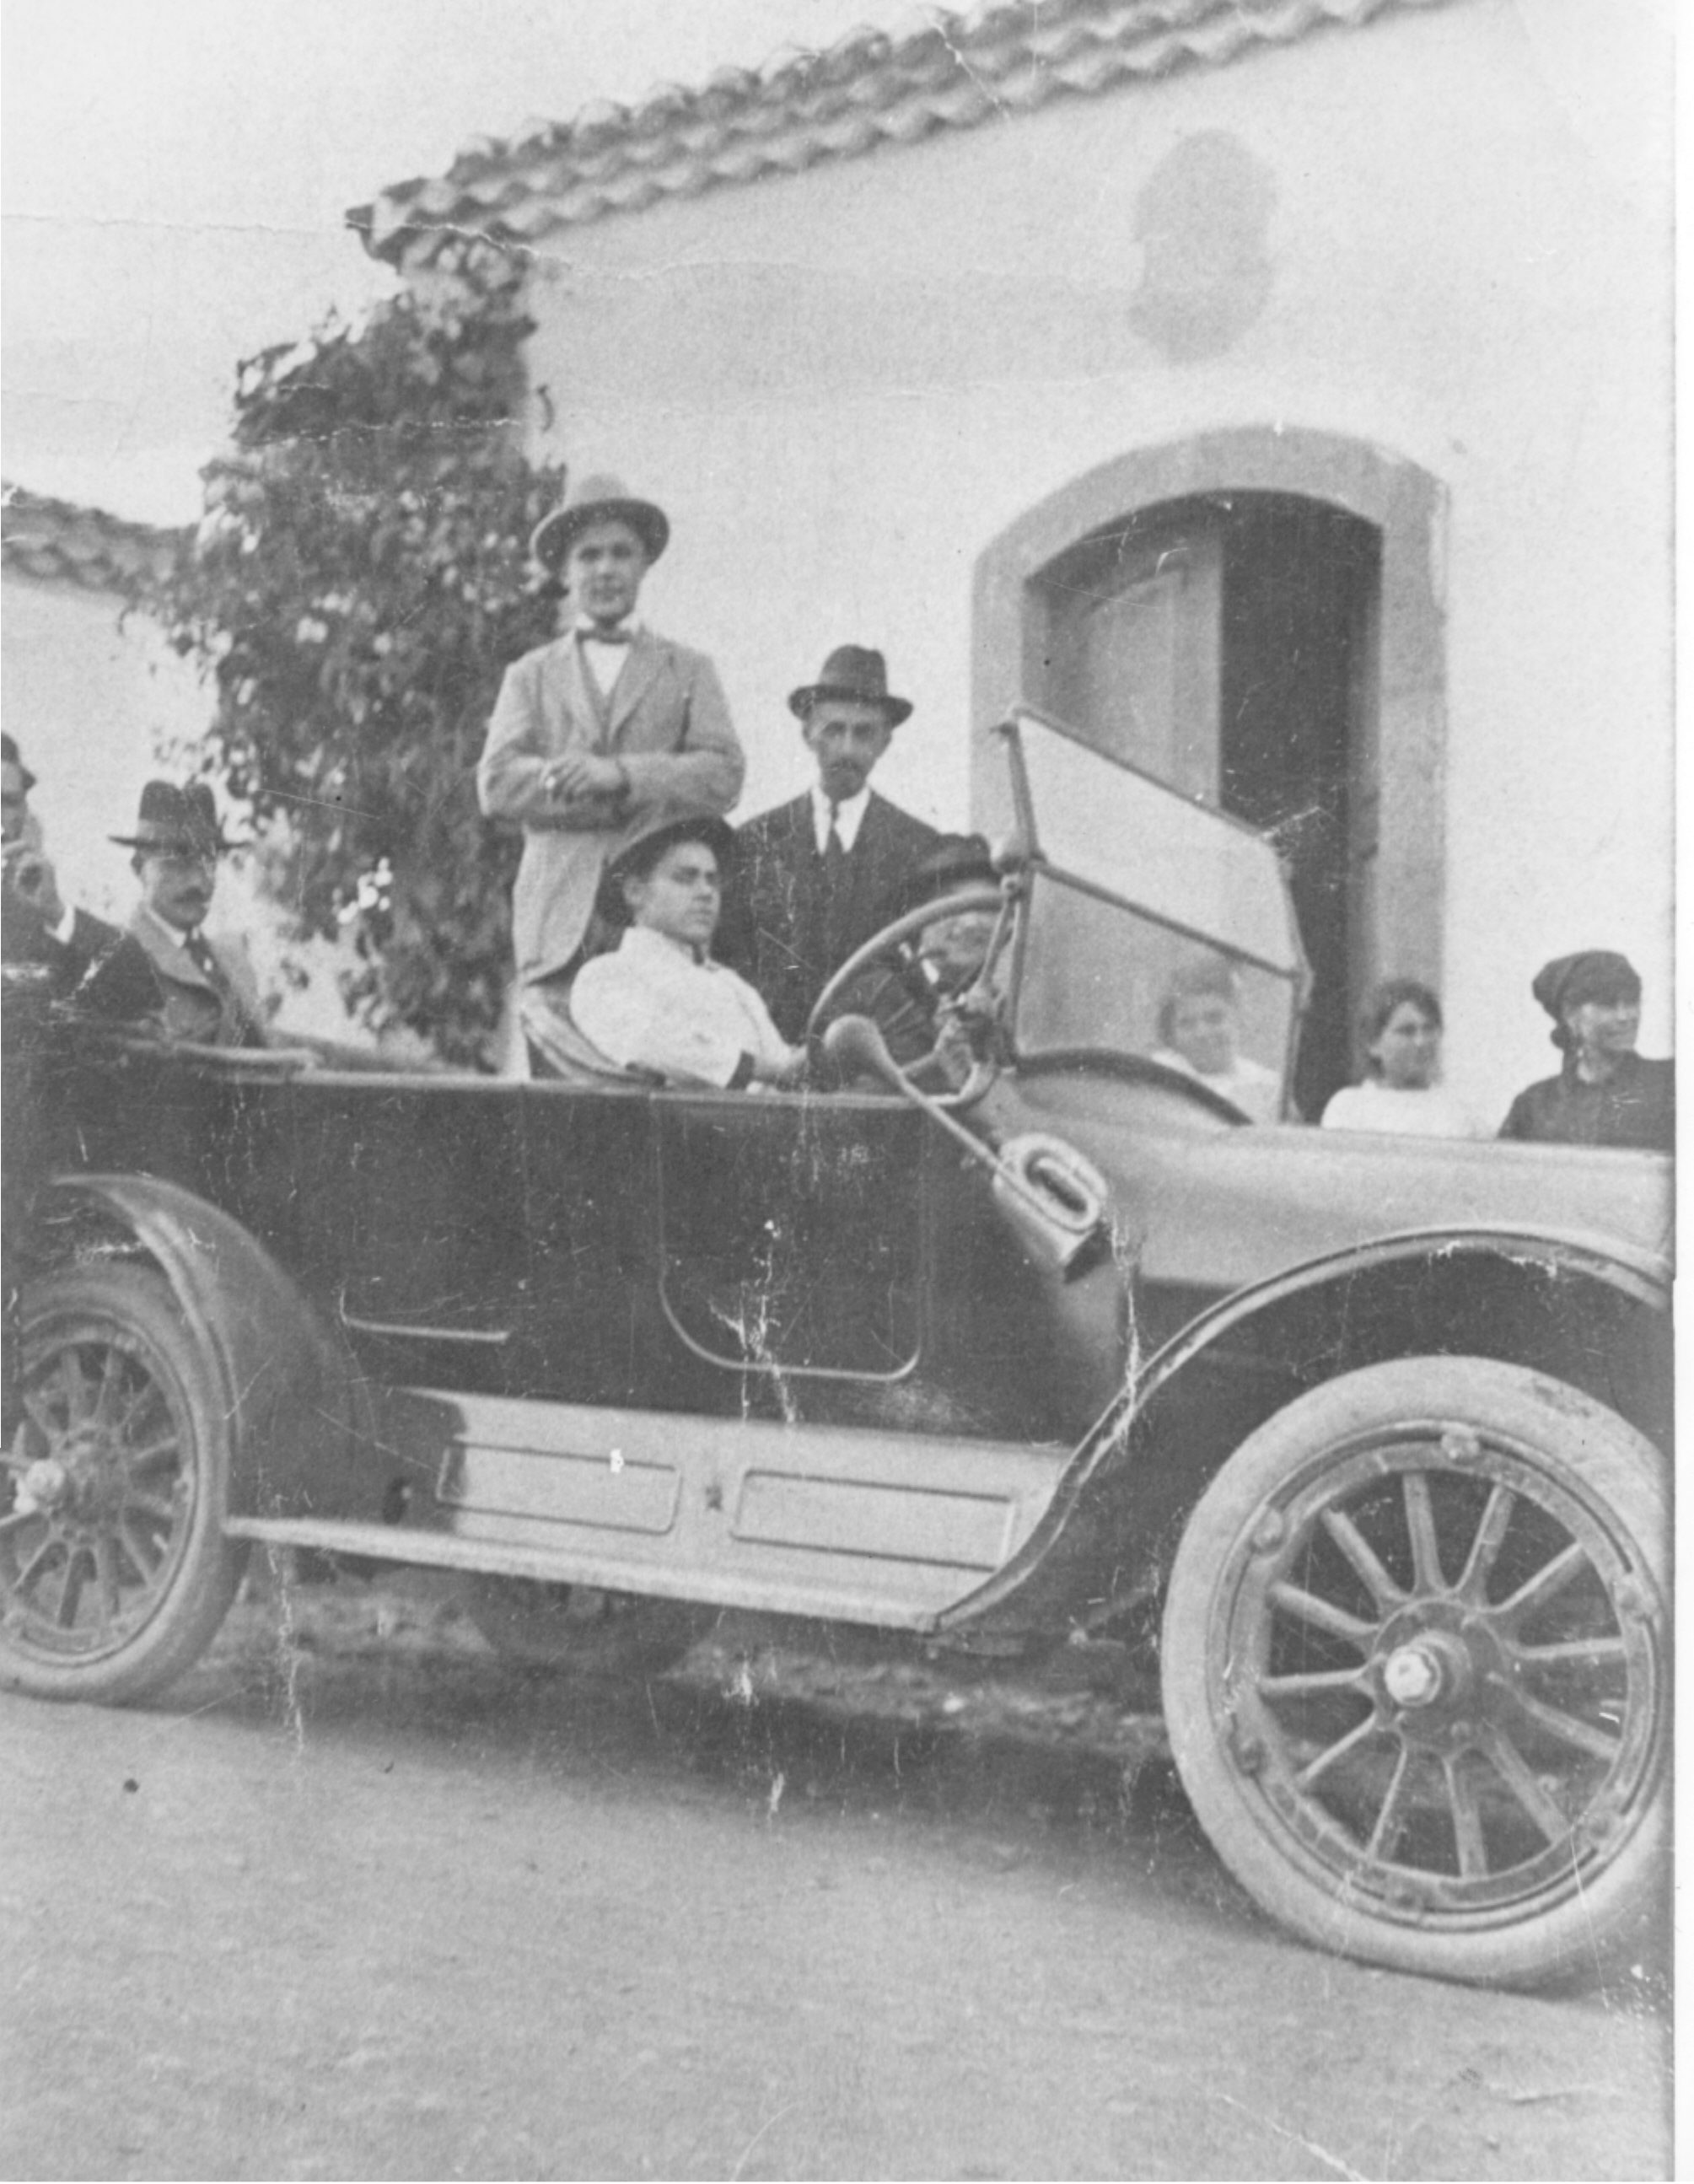 Recuerdo de un paseo a Buen Lugar:
D. Narciso Guerra, D. José Romero con el chófer Dominguito Pérez y otros pasajeros.